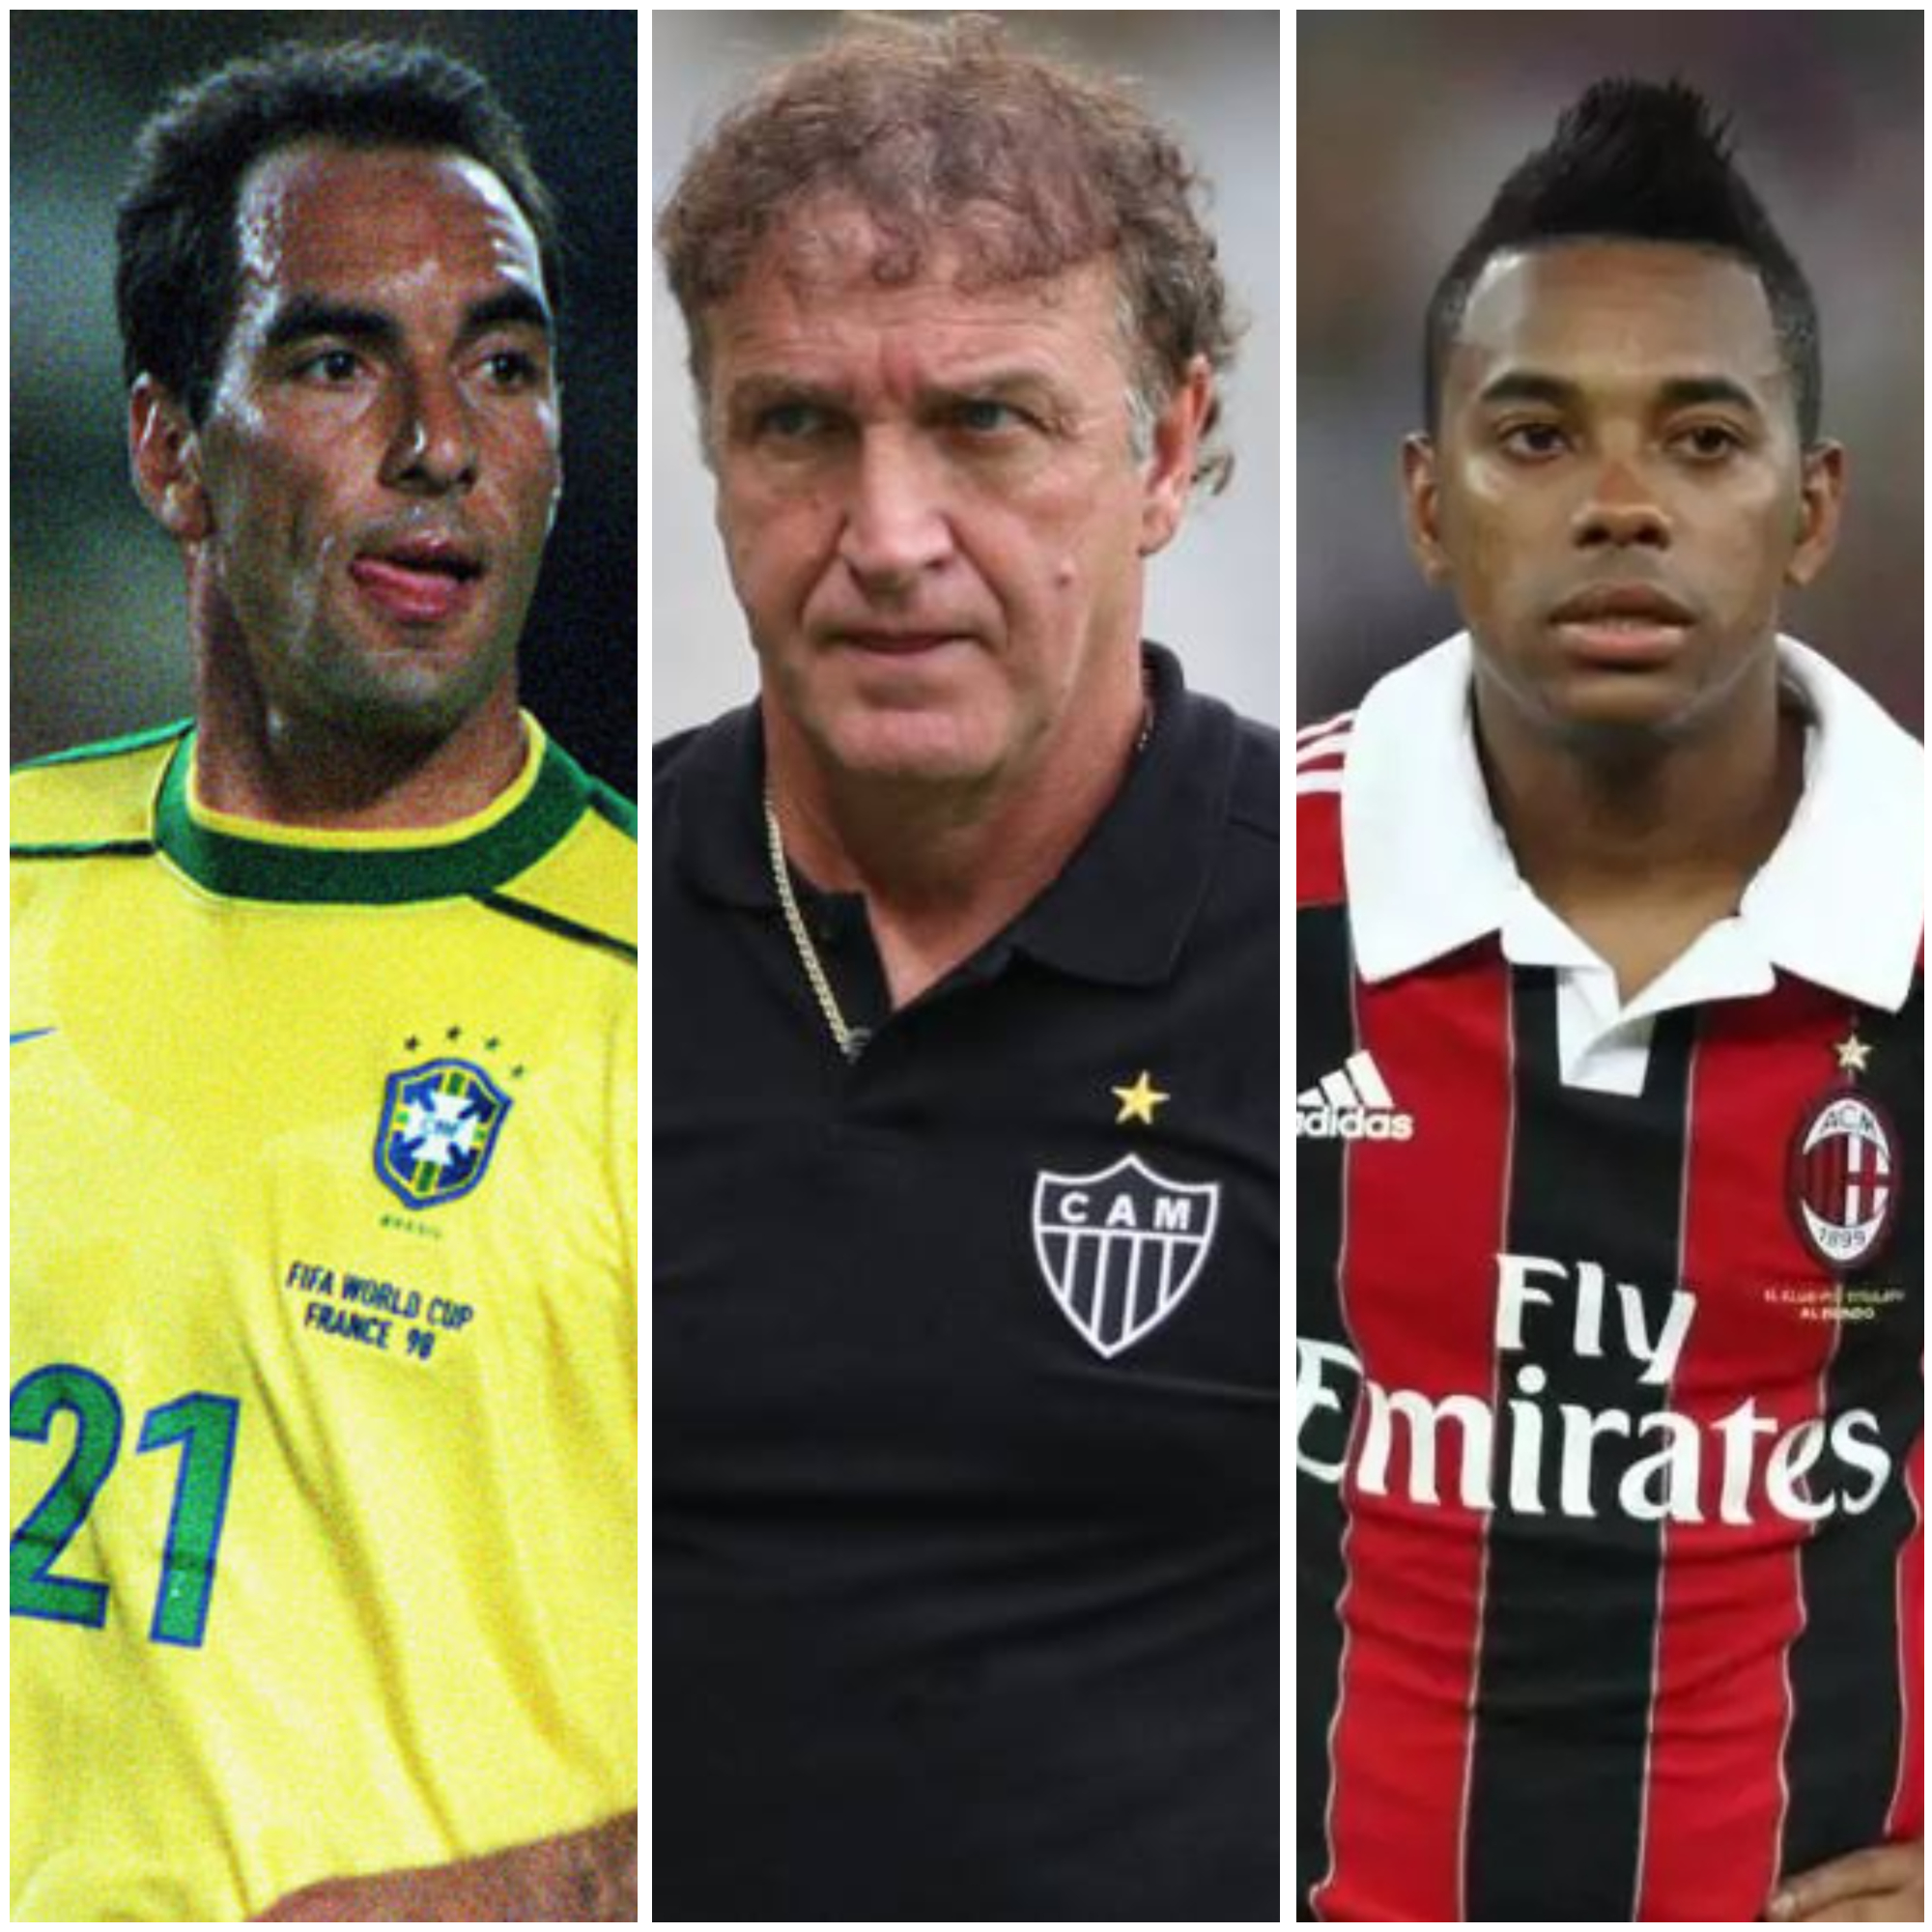 Situação de Marcinho se assemelha a outros casos conhecidos no futebol brasileiro